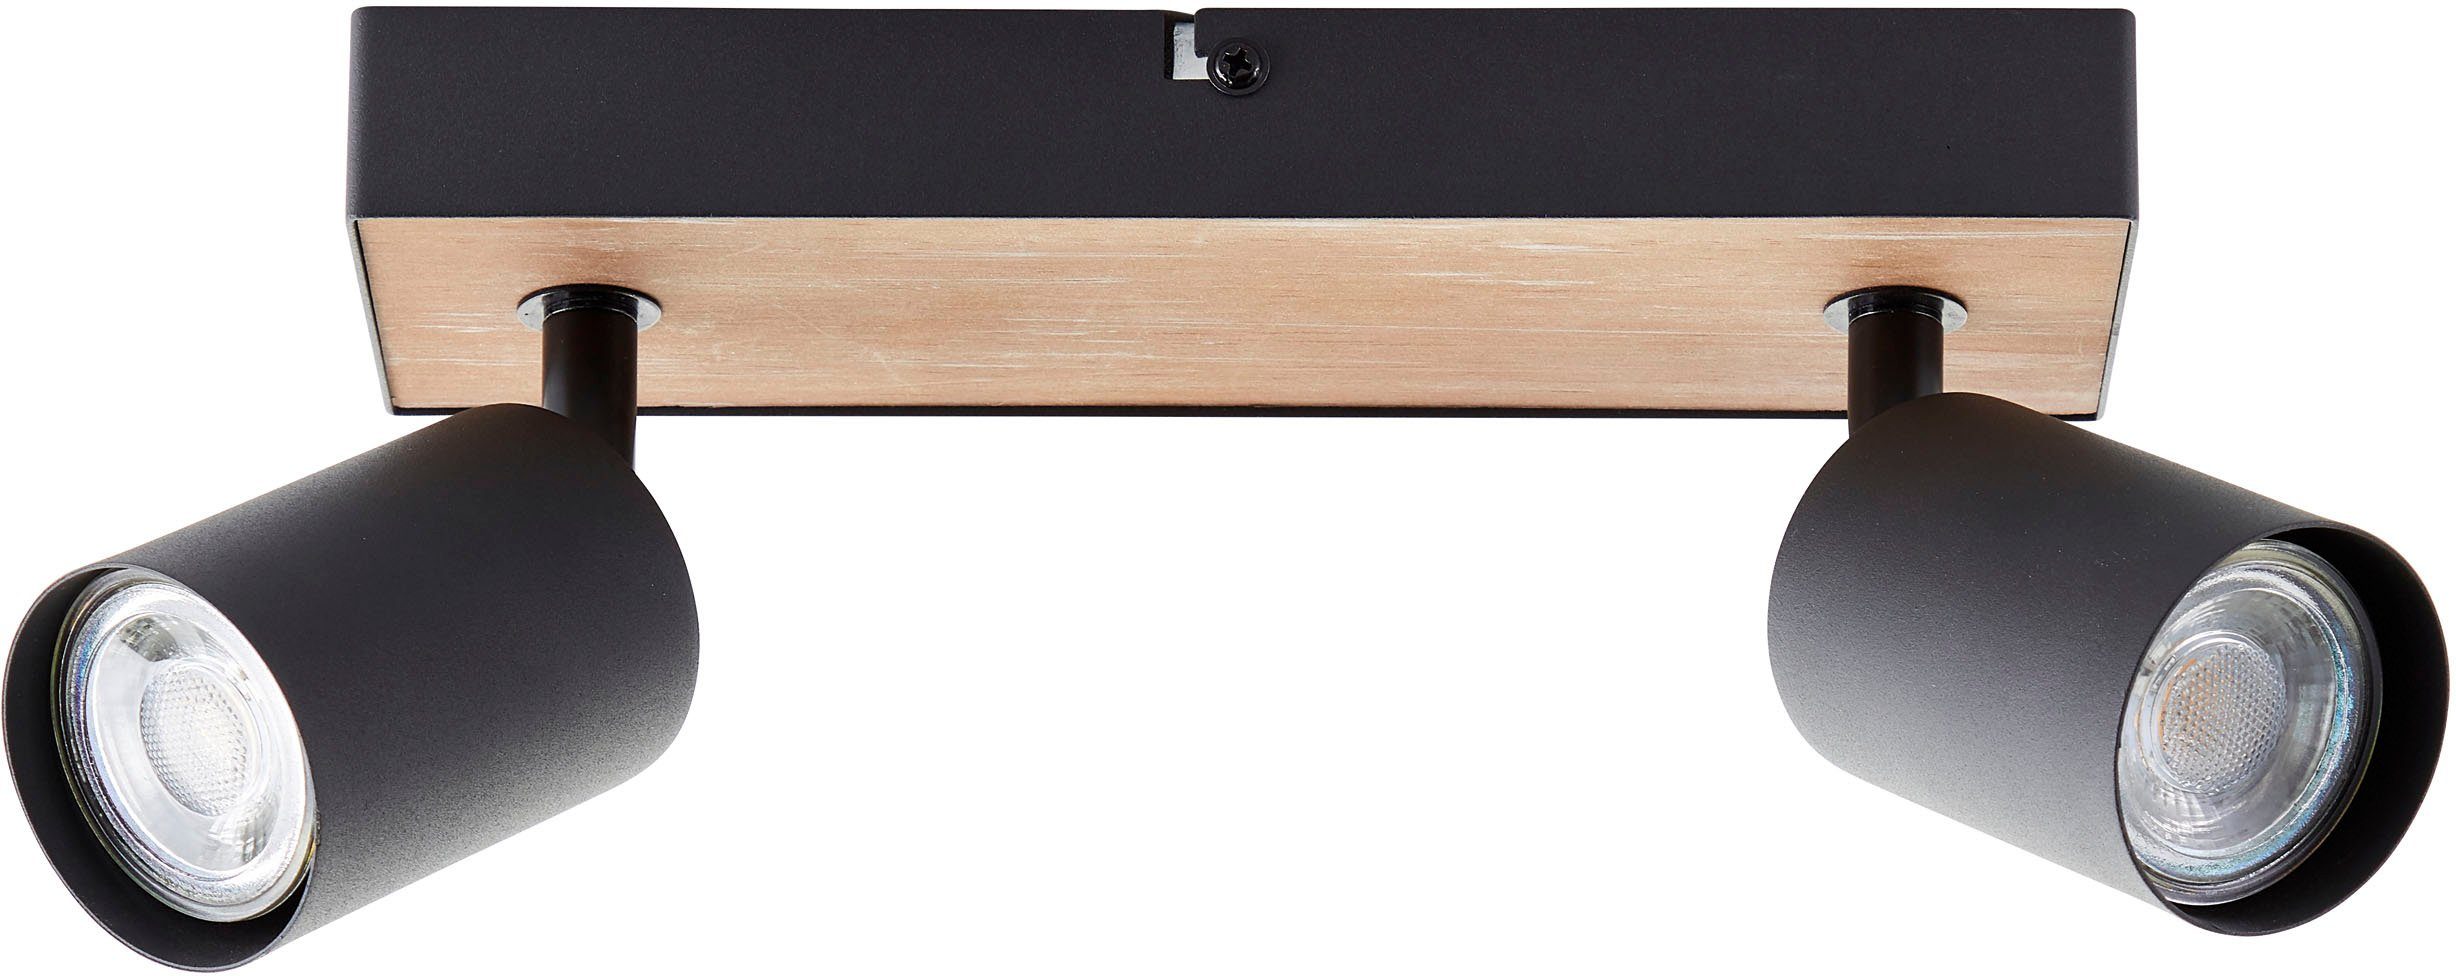 Brilliant Deckenstrahler schwenkbar, GU10, 15x24x8 3000K, 345lm, Wood, Spotbalken Warmweiß, wechselbar, cm, LED Metall/Holz Jello